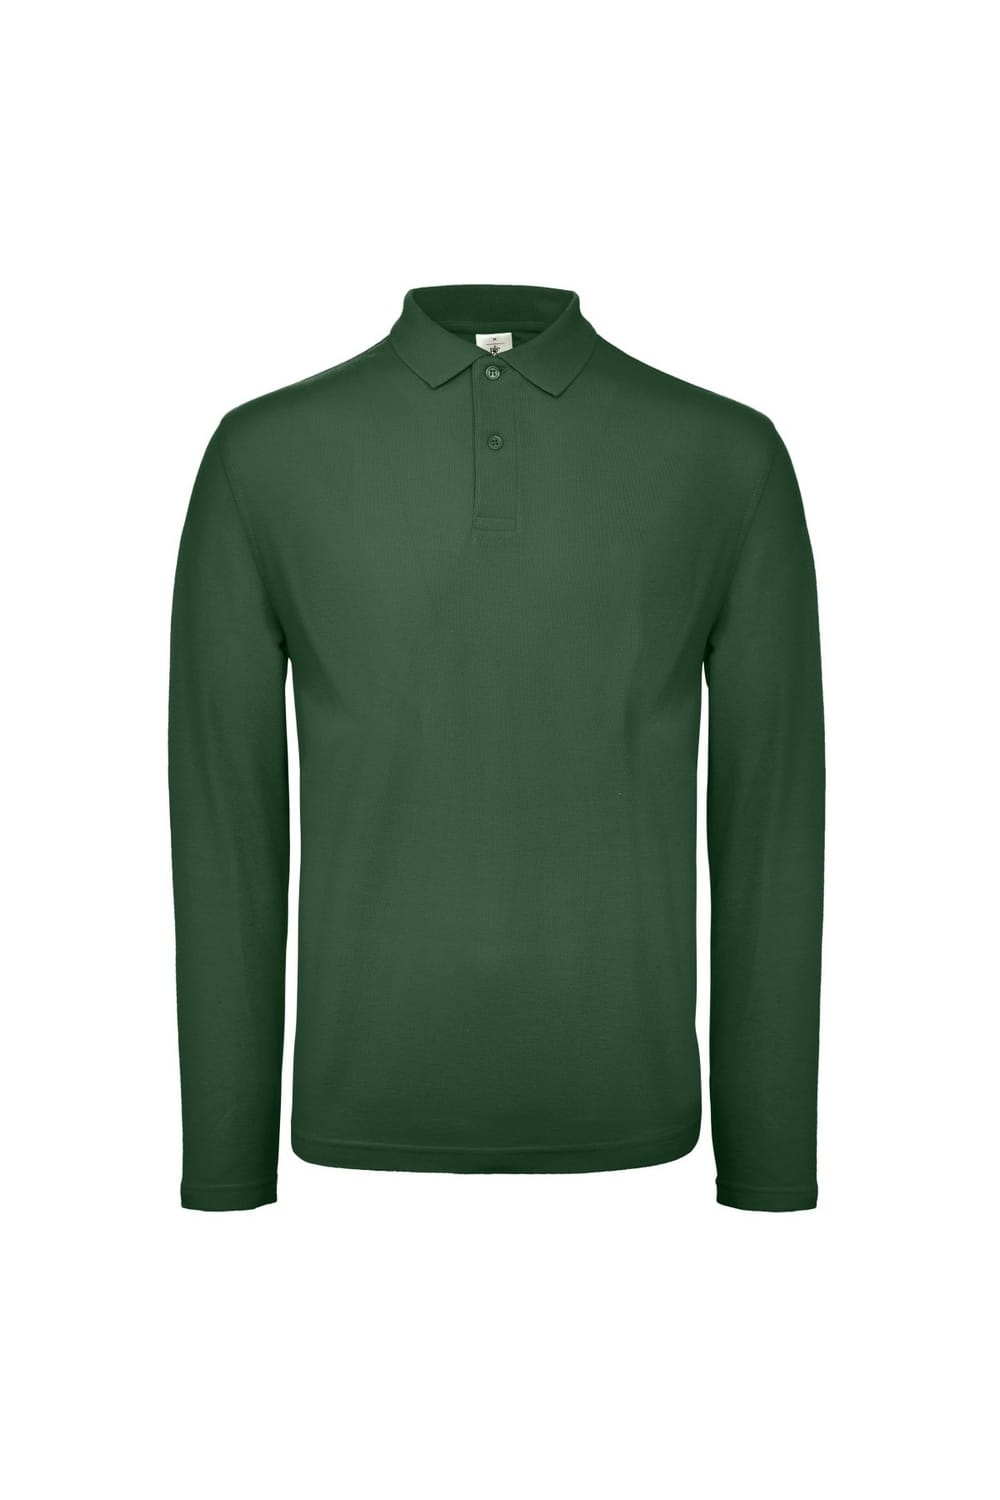 B&C ID.001 Mens Long Sleeve Polo (Racing Green)